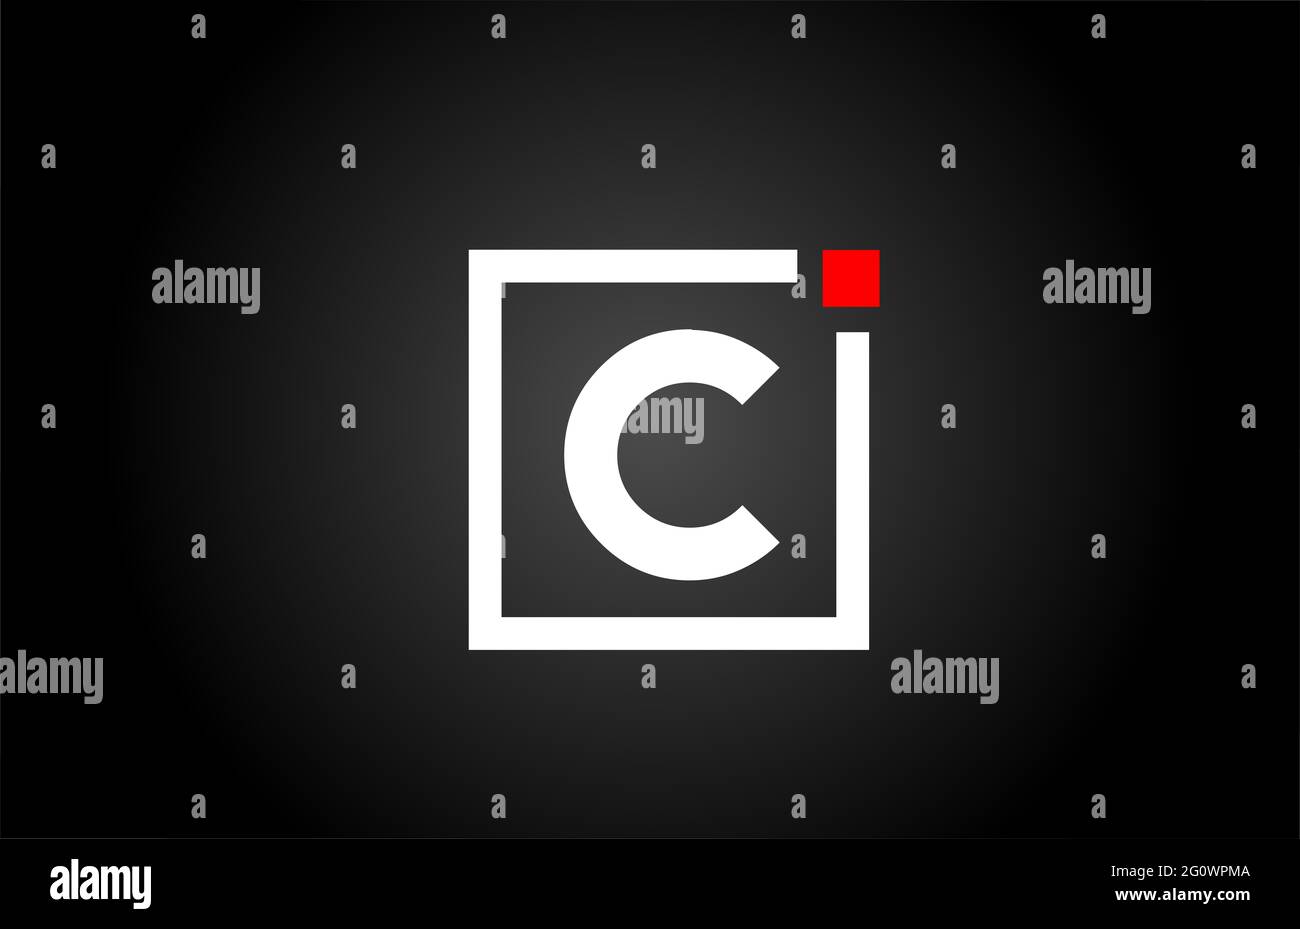 Logo con l'icona della lettera C in bianco e nero. Design aziendale e aziendale con punto quadrato e rosso. Modello di identità aziendale creativa Foto Stock